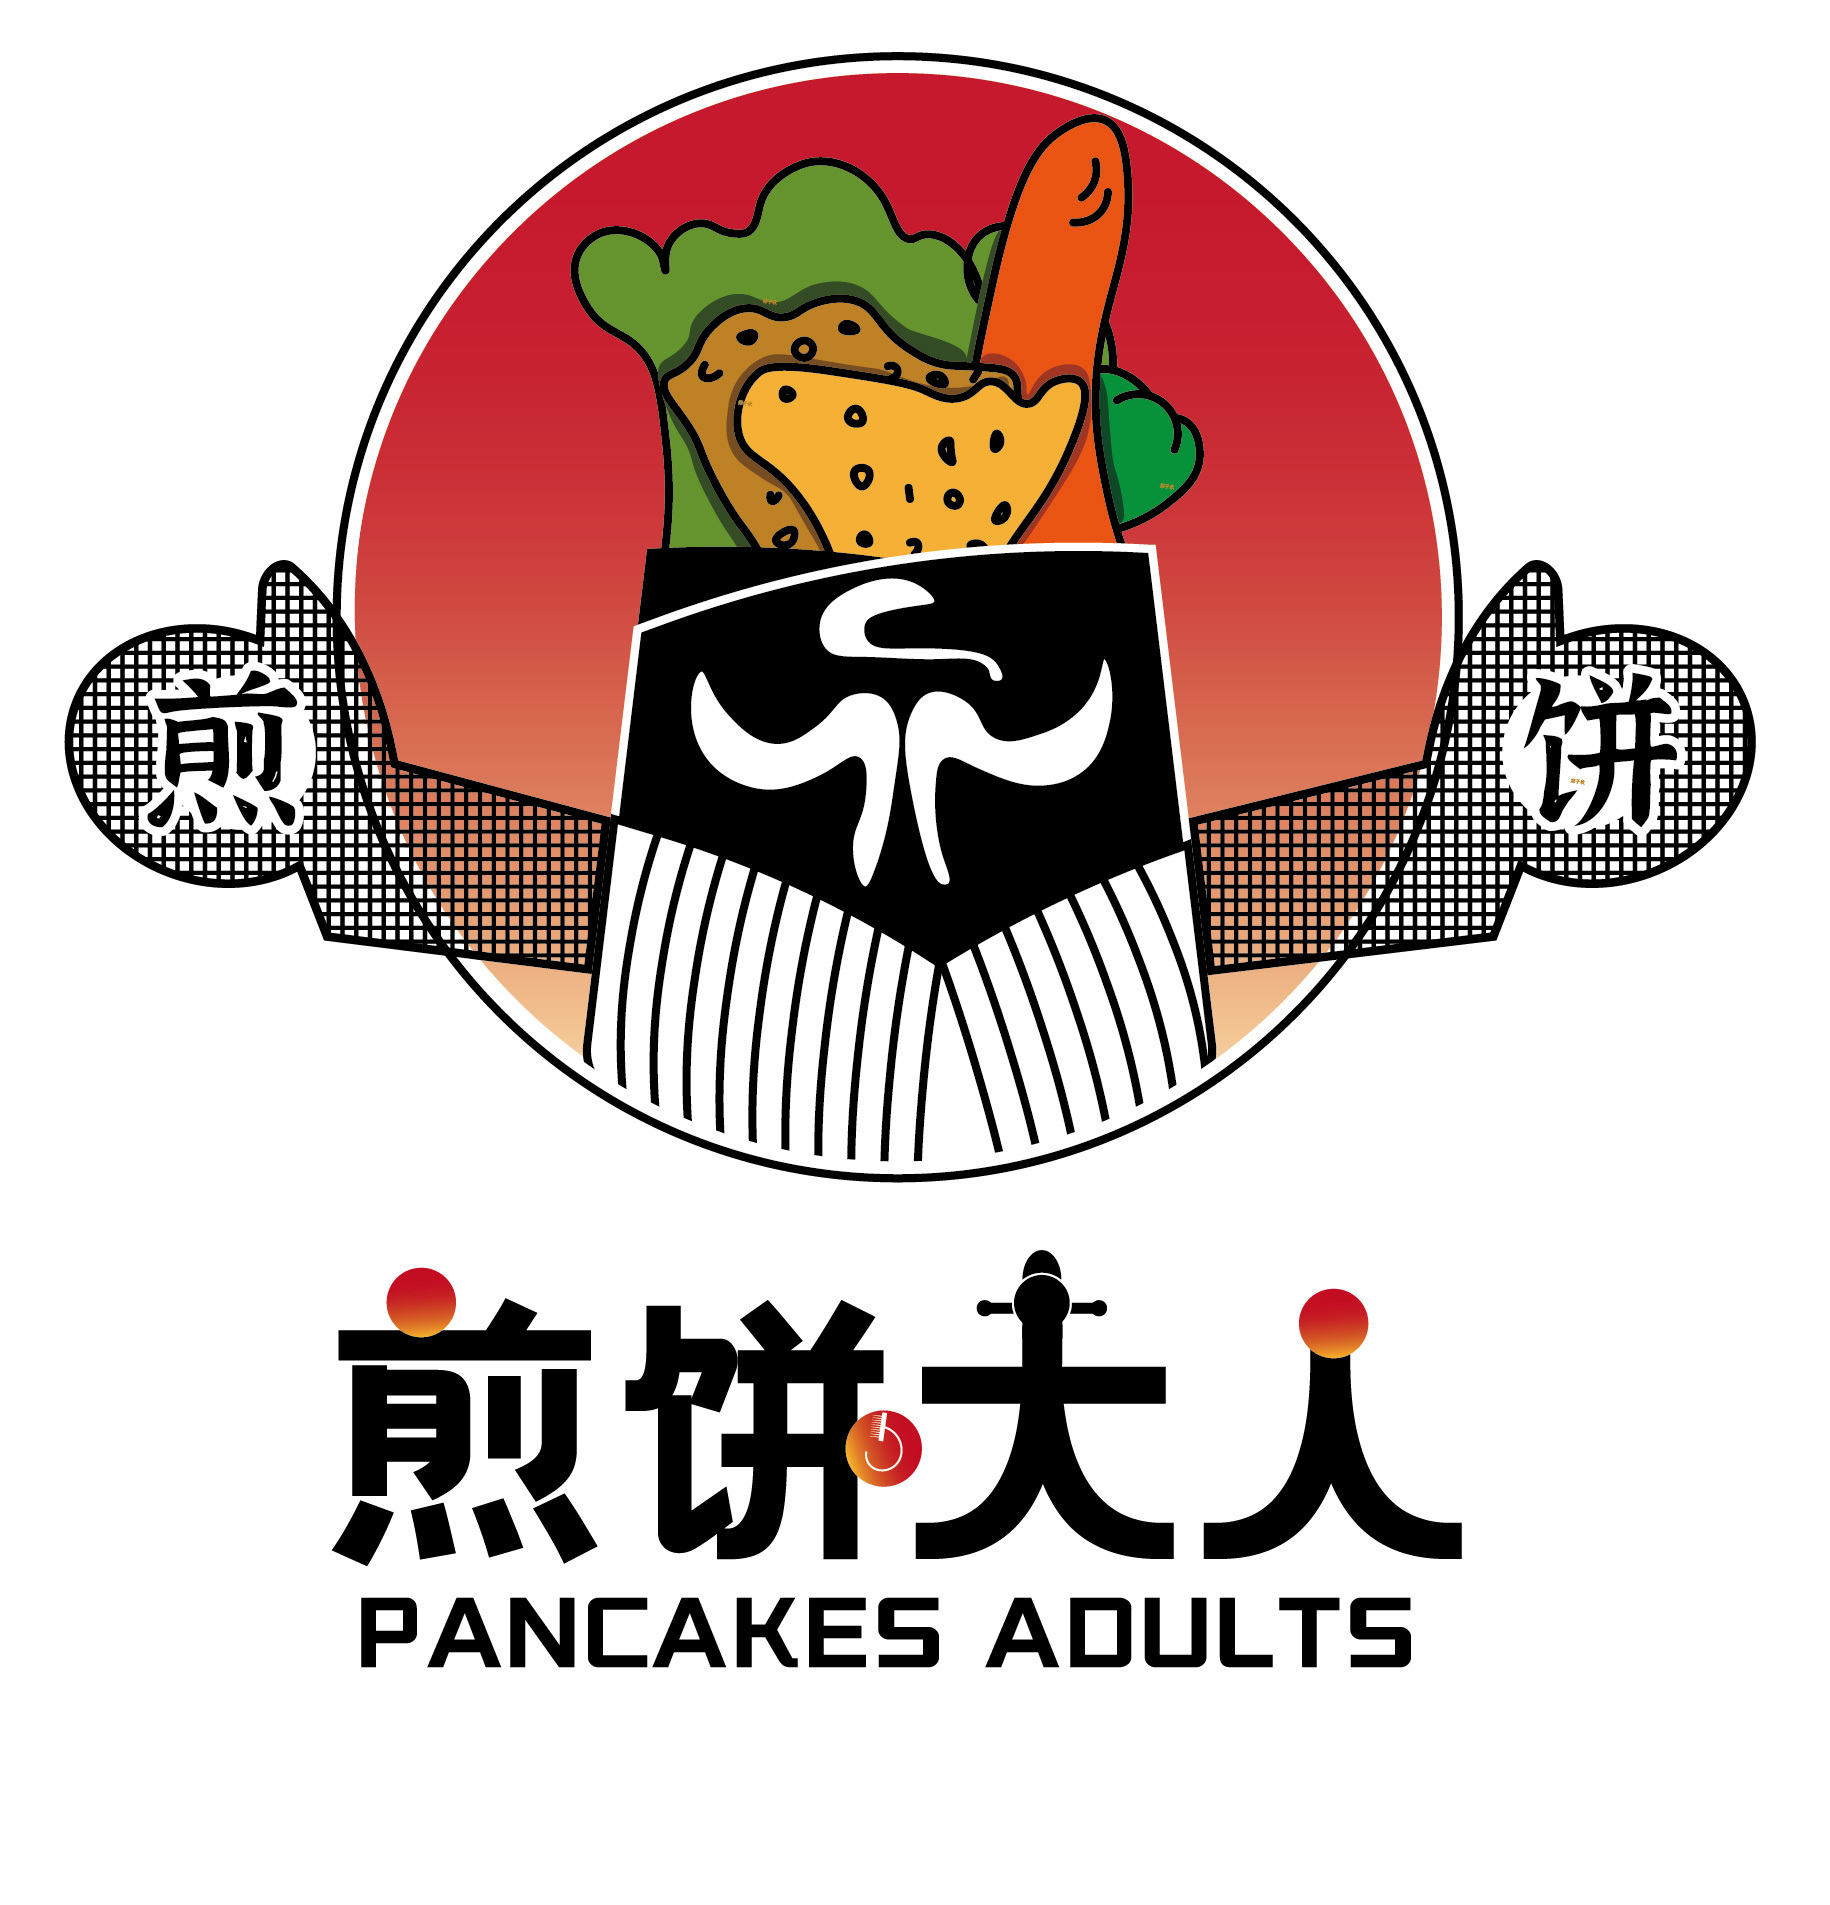 滕州菜煎饼 logo图片